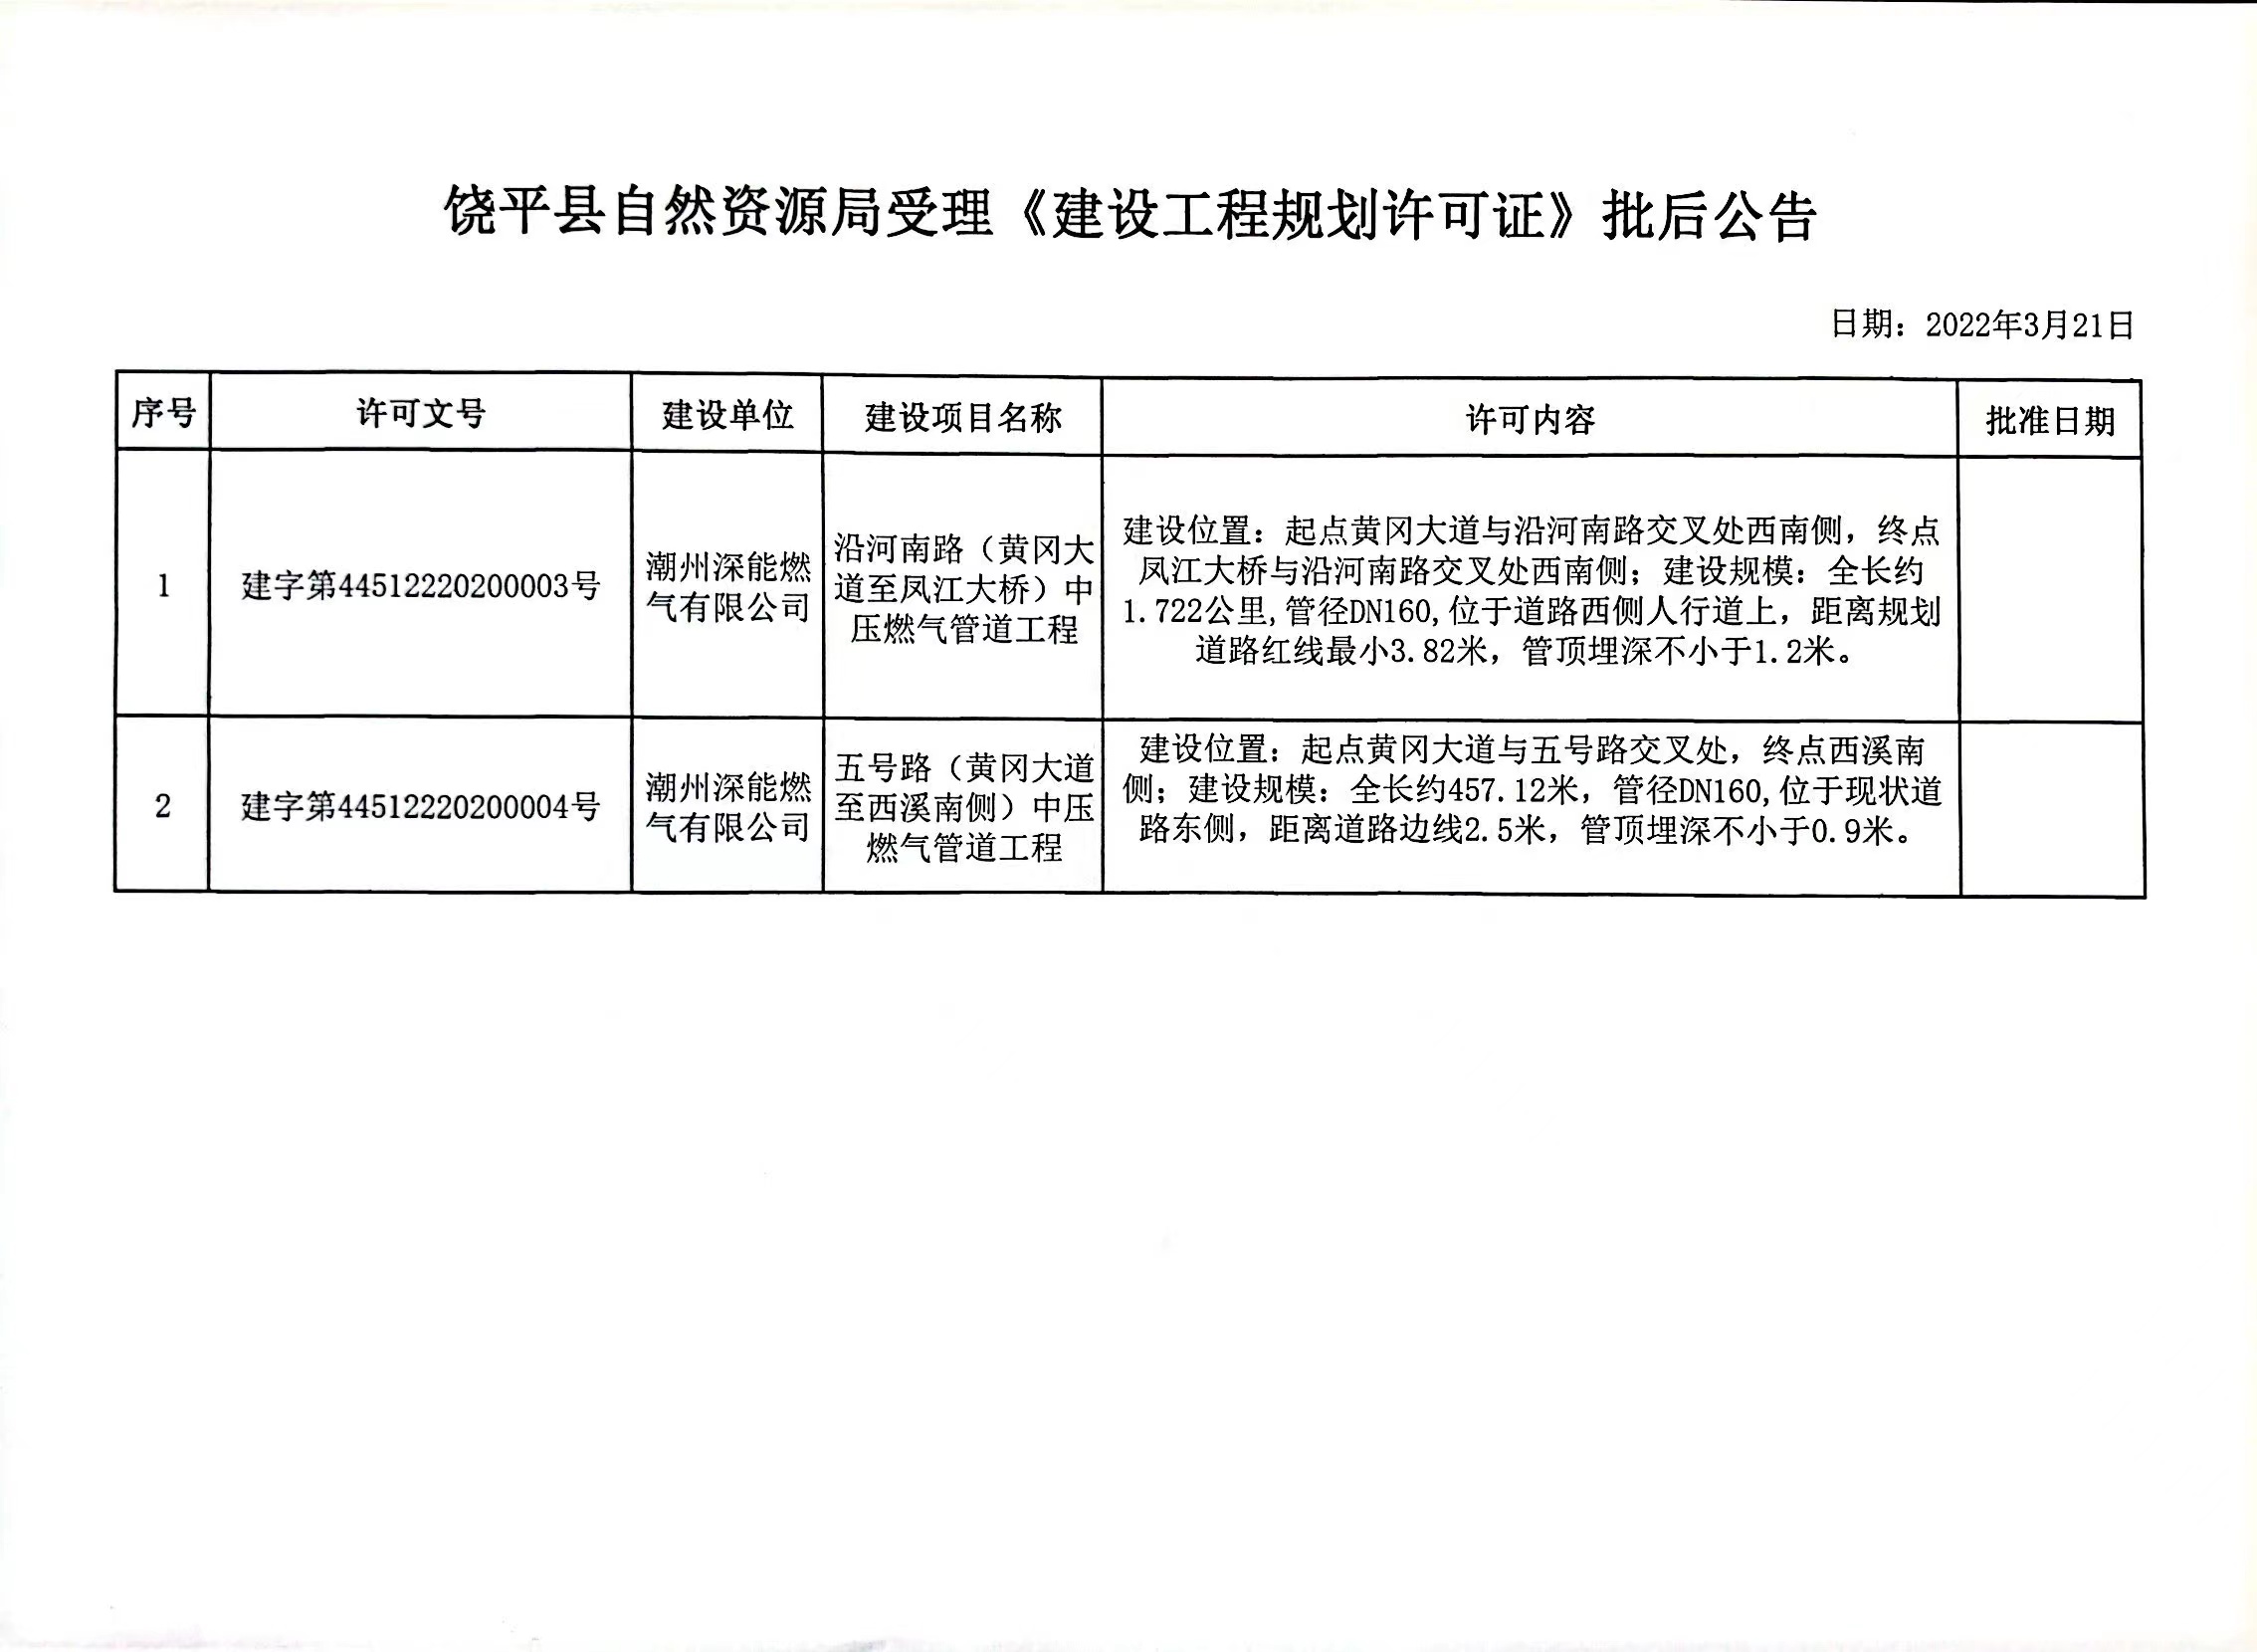 饶平县自然资源局受理《建设工程规划许可证》批后公告.jpg